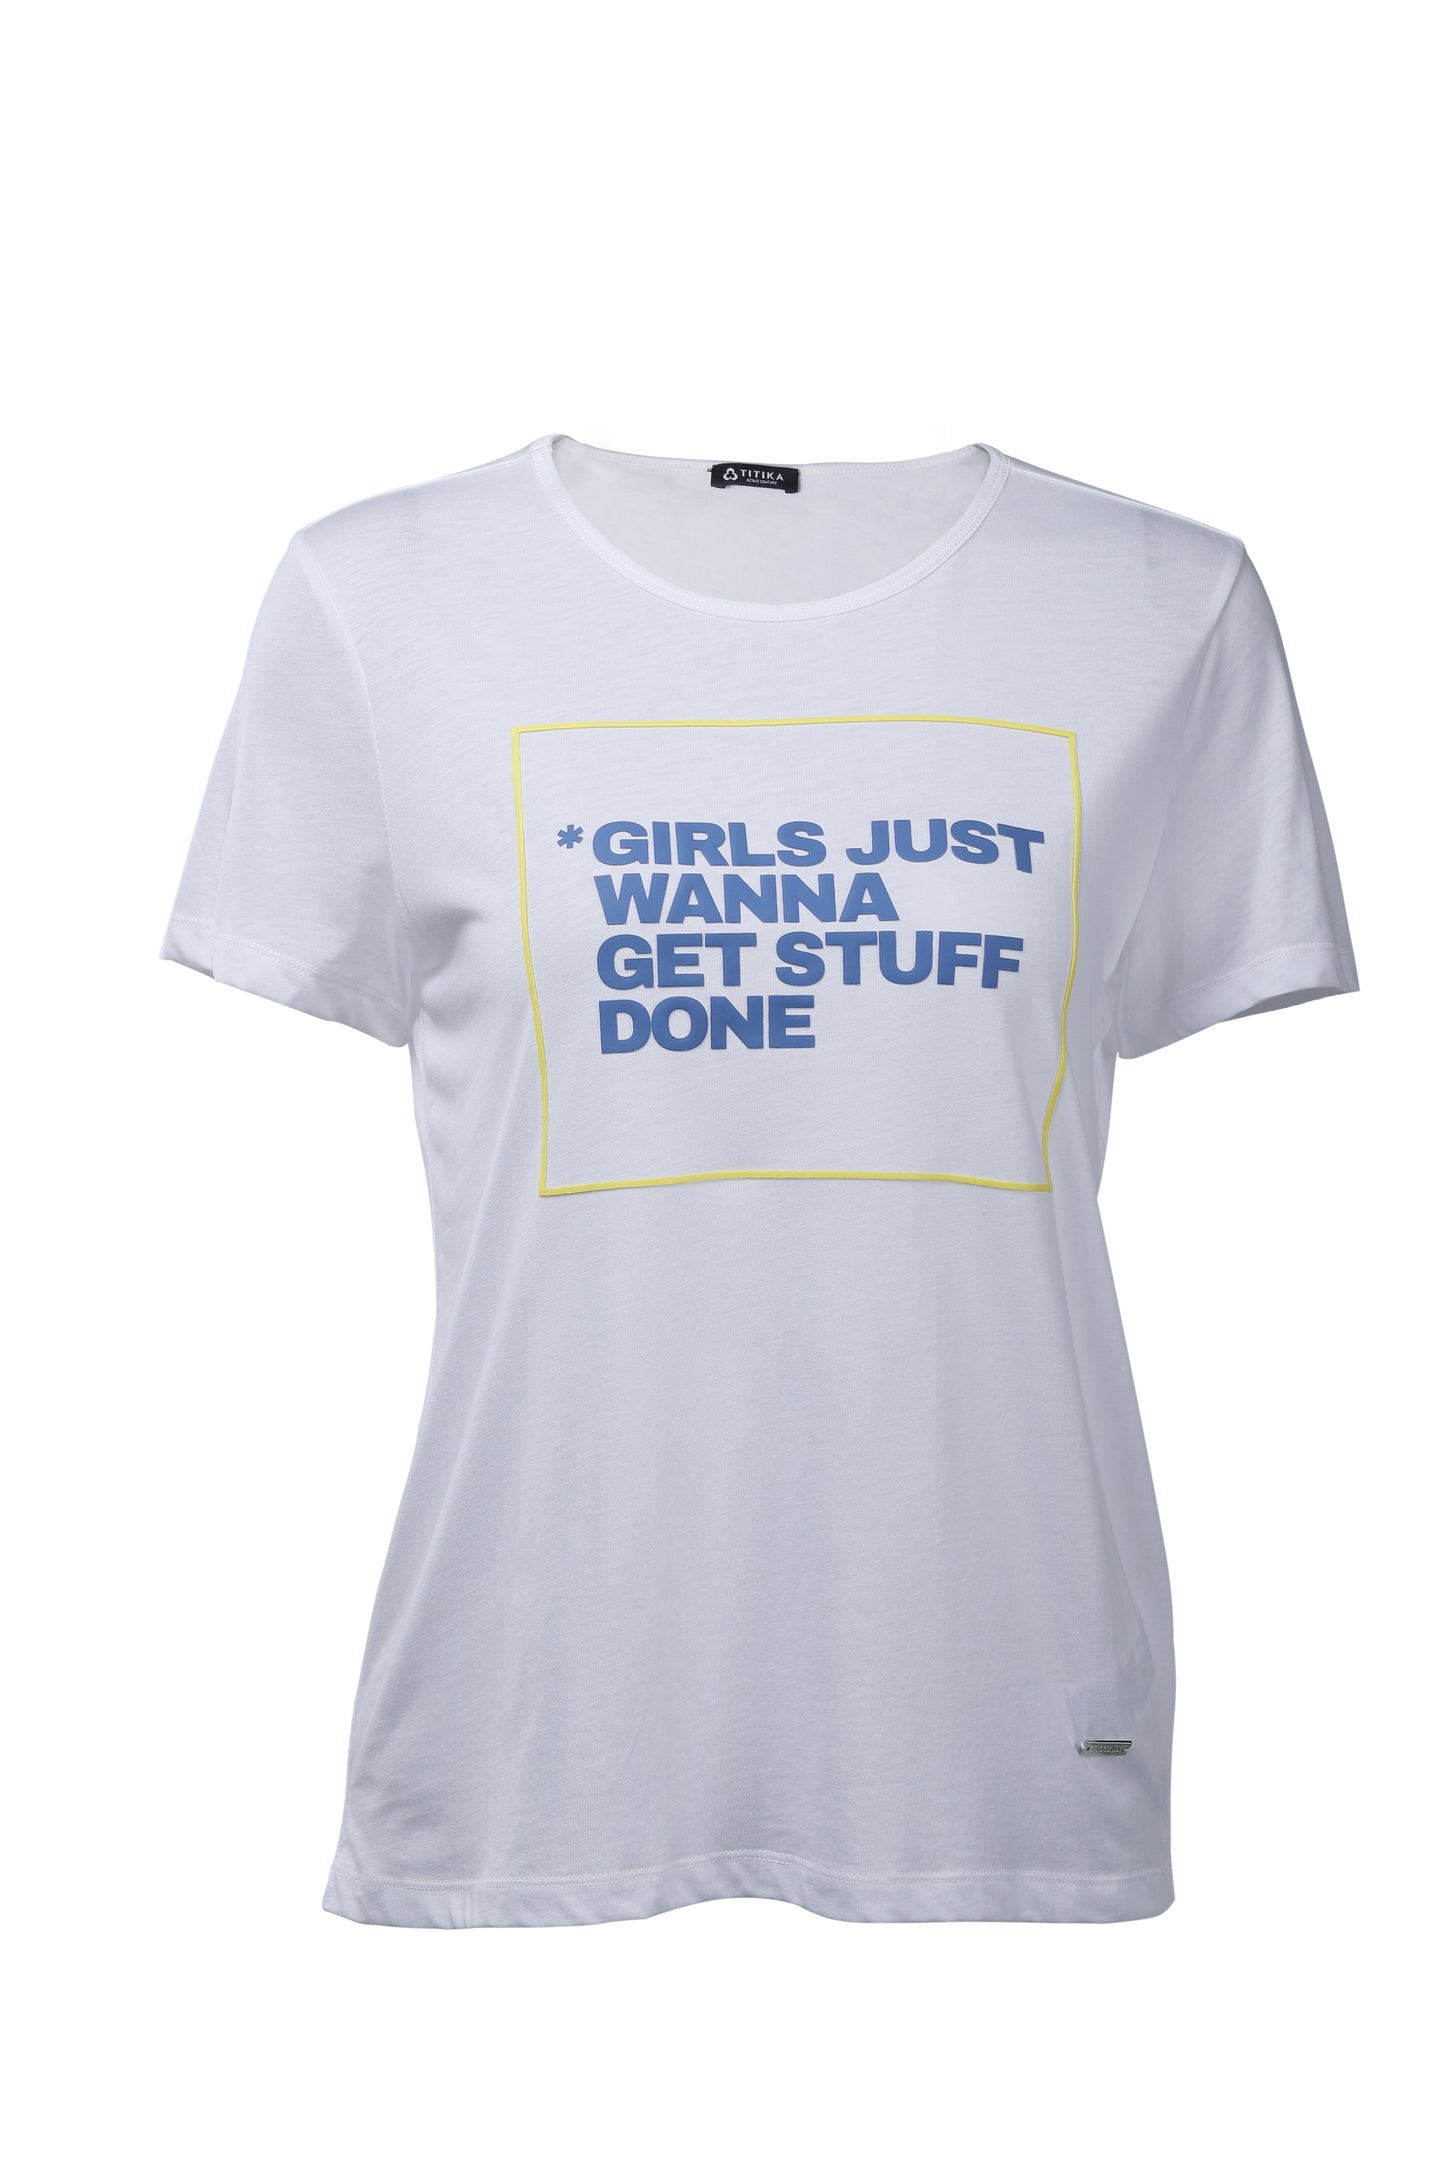 Les filles veulent juste un tee-shirt